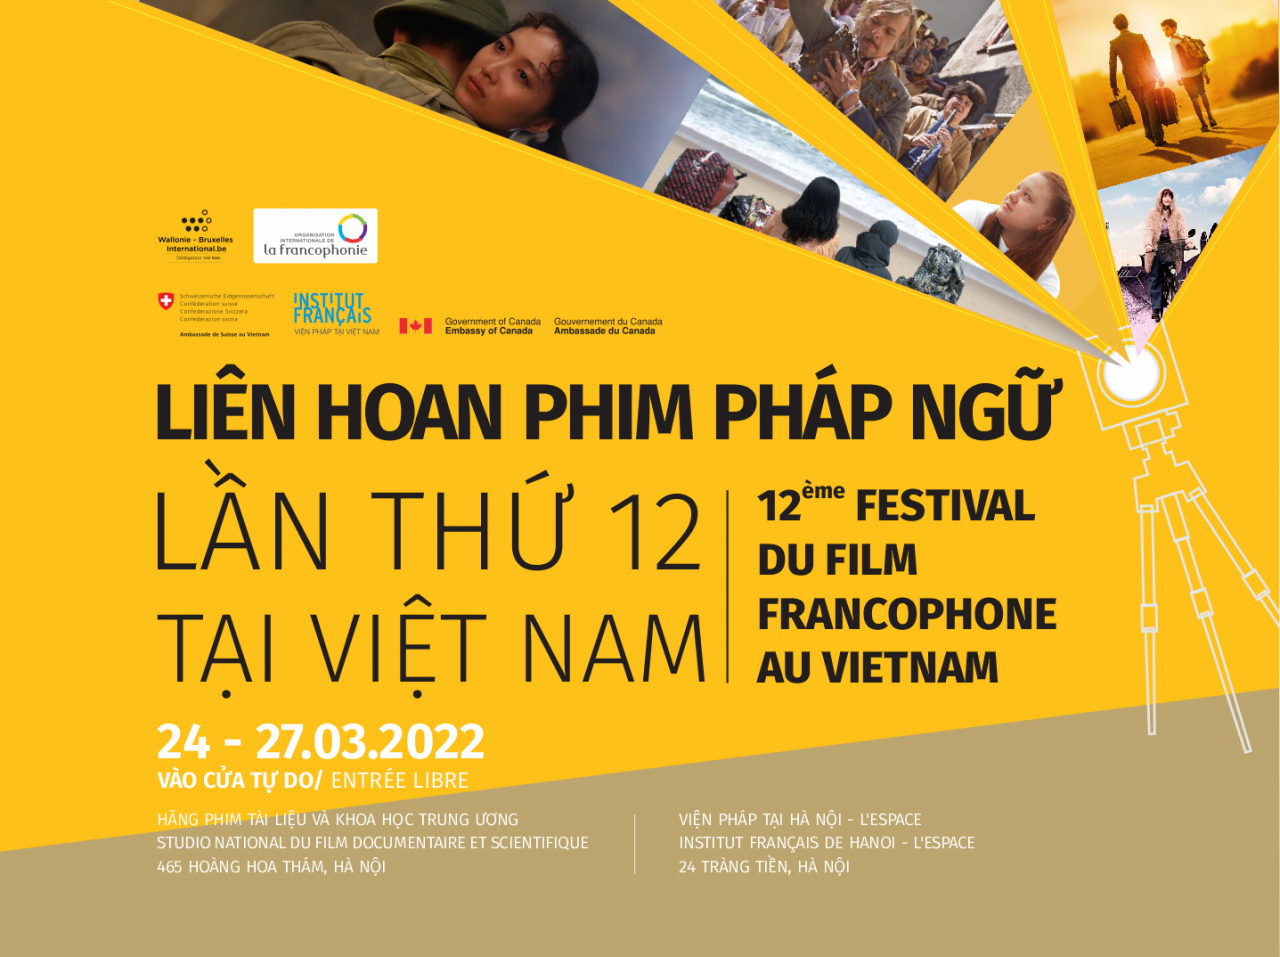 Cơ hội xem miễn phí 6 bộ phim Pháp ngữ đặc sắc tại Việt Nam